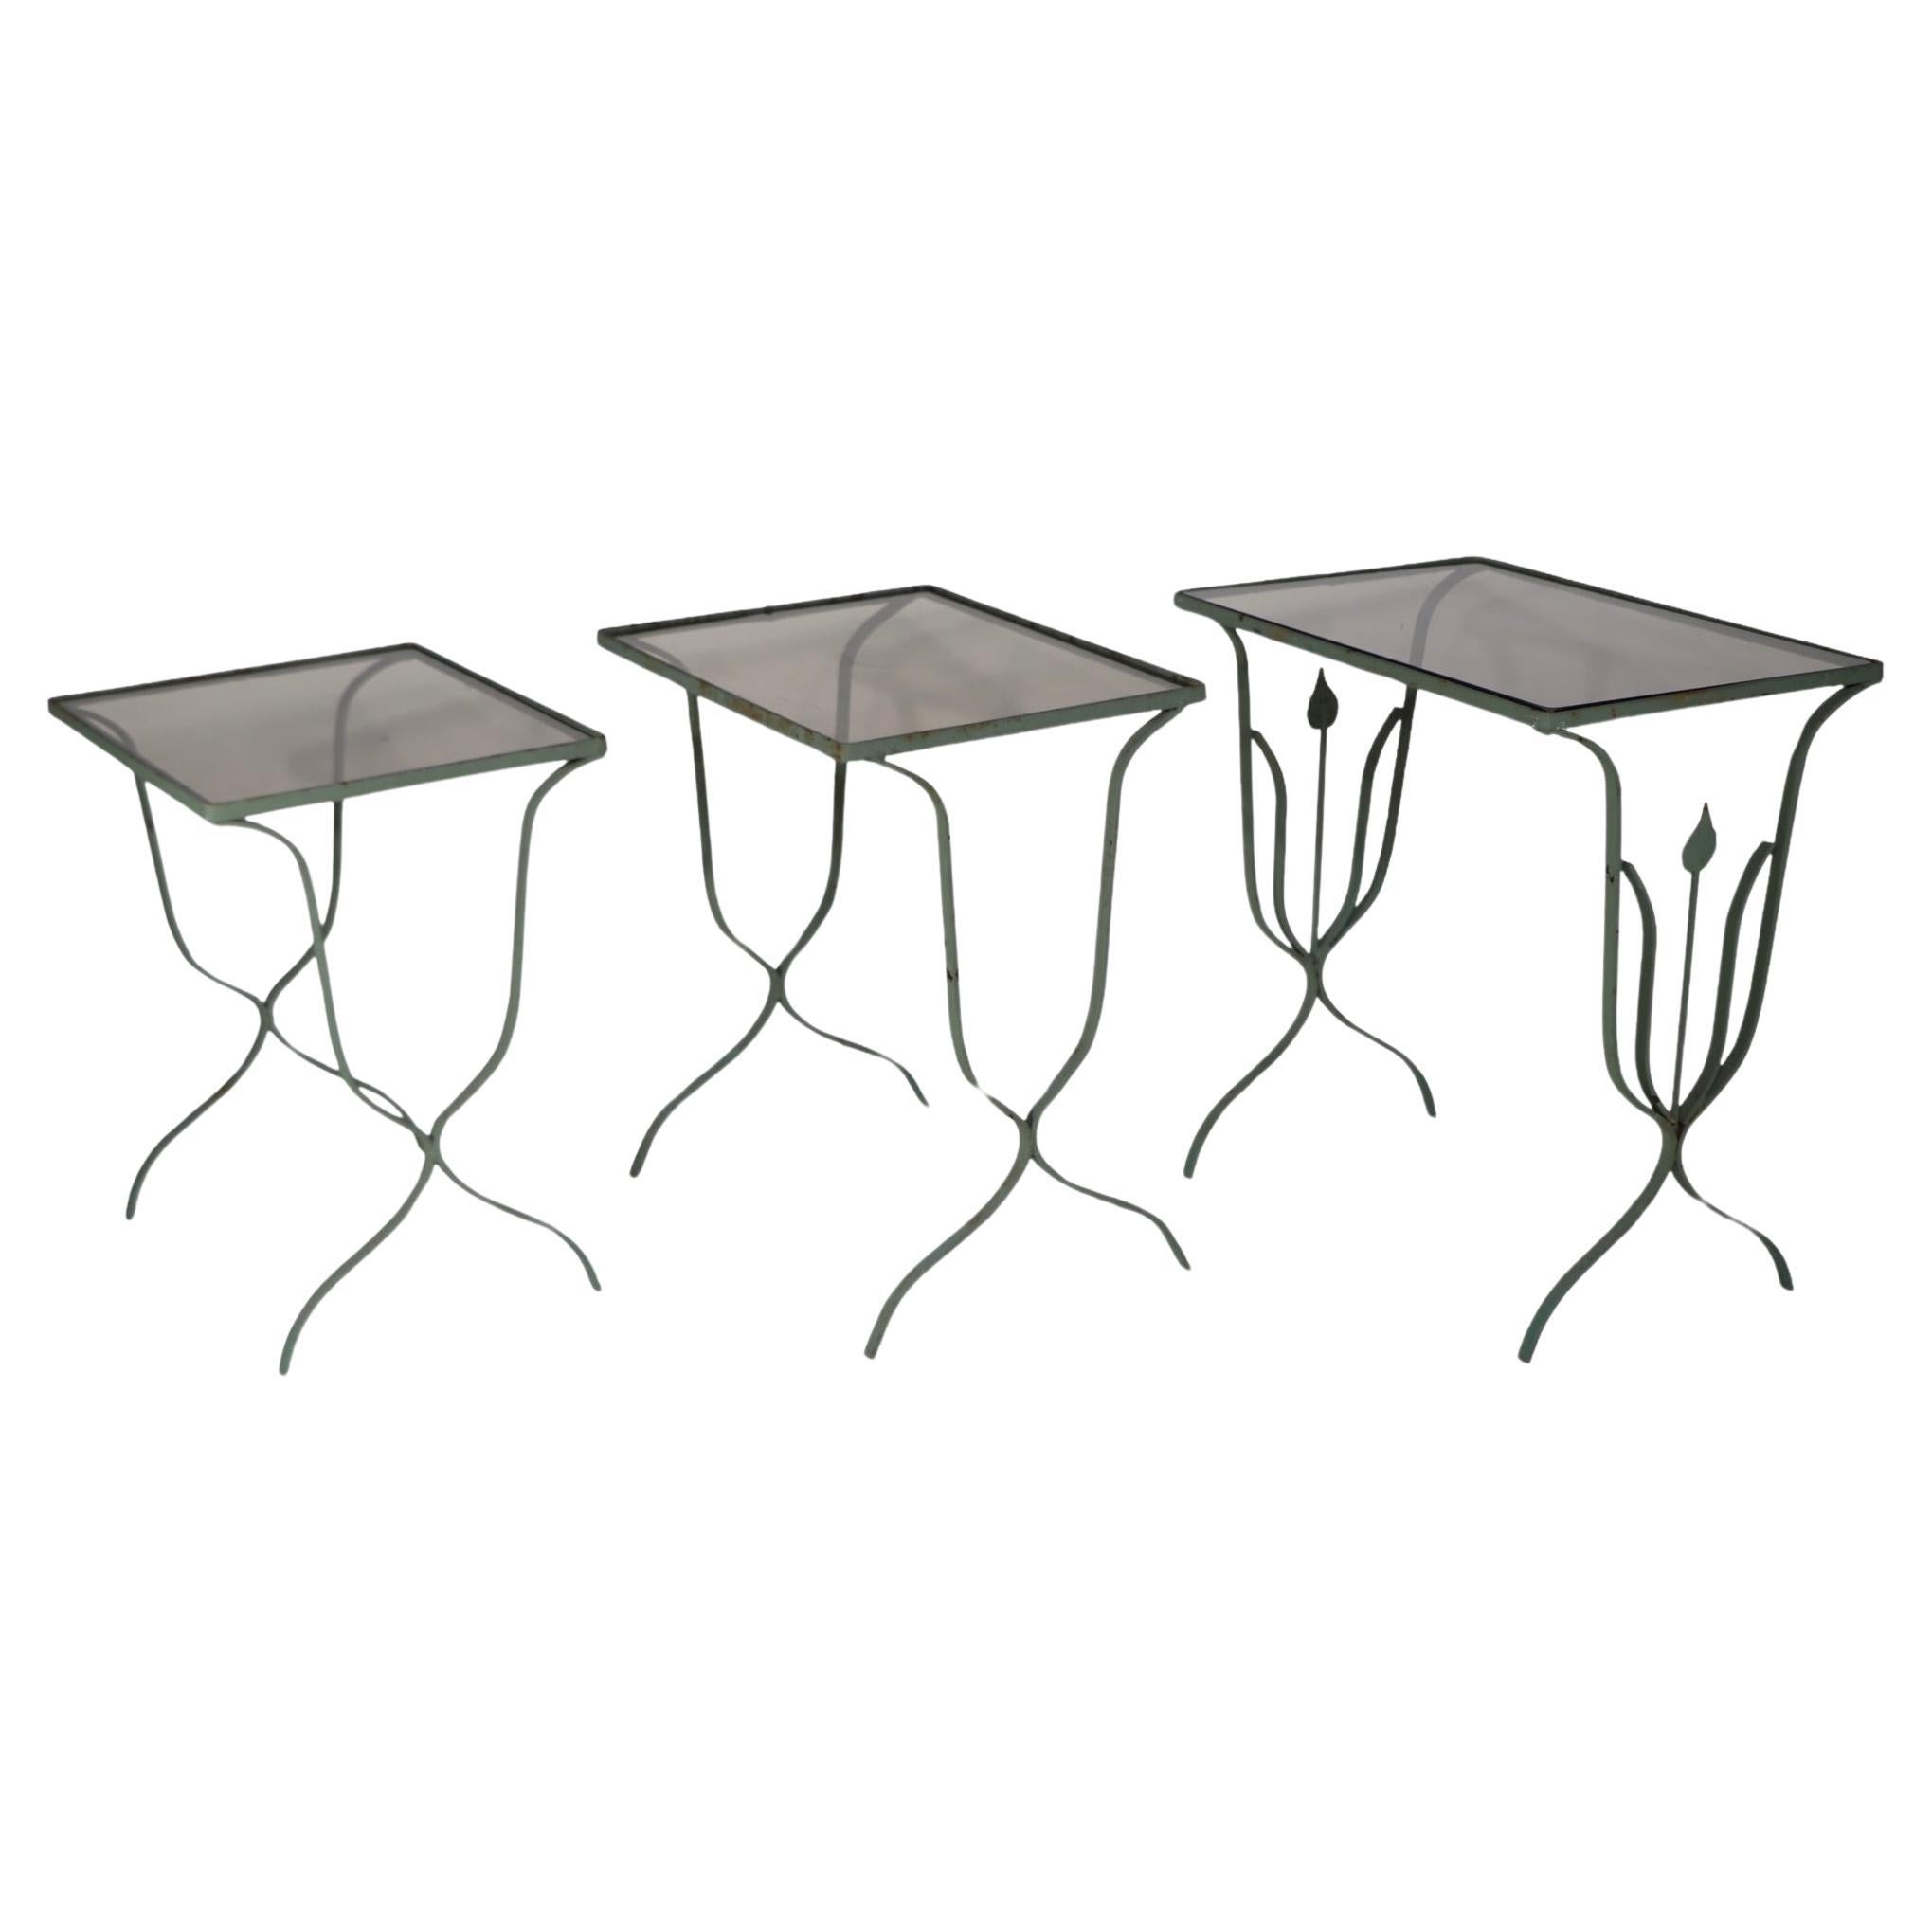 Ungewöhnlicher Satz von drei abgestuften Verschachtelungen  Schmiedeeisen und Glas Nisttische. Diese schicken Tische sind im Art-Déco-Stil  stilisierte Moderne  Profil einer Pflanze auf dem größten Tisch, und getönte oder rauchgraue Glasplatten. Die